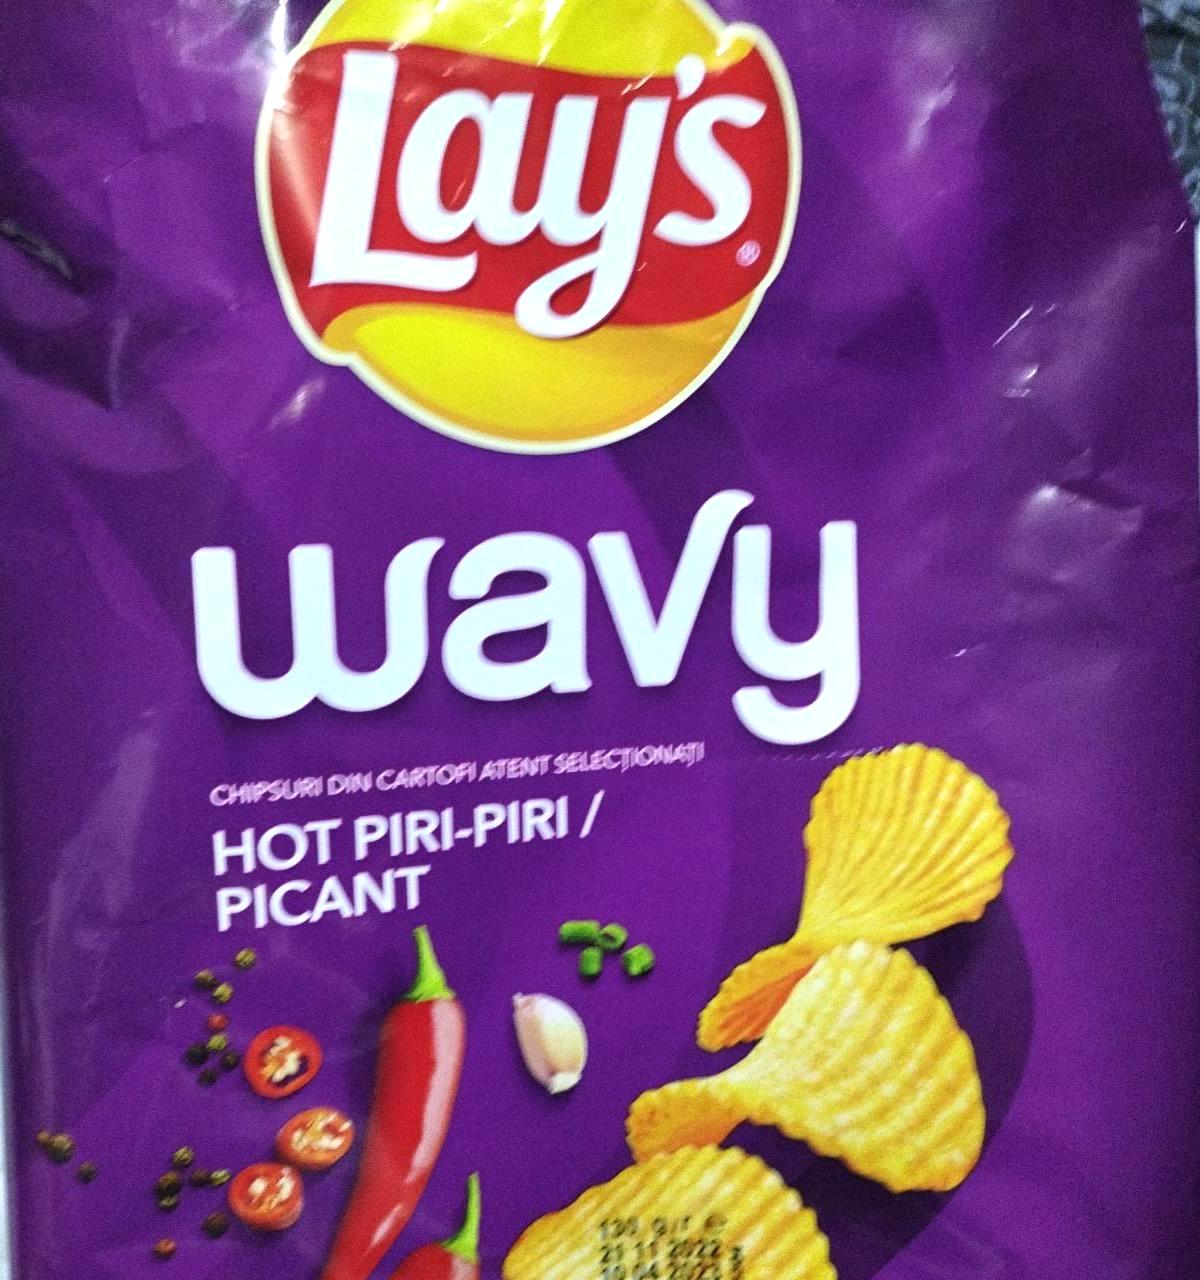 Képek - Wavy hot piri-piri/picant chips Lay's